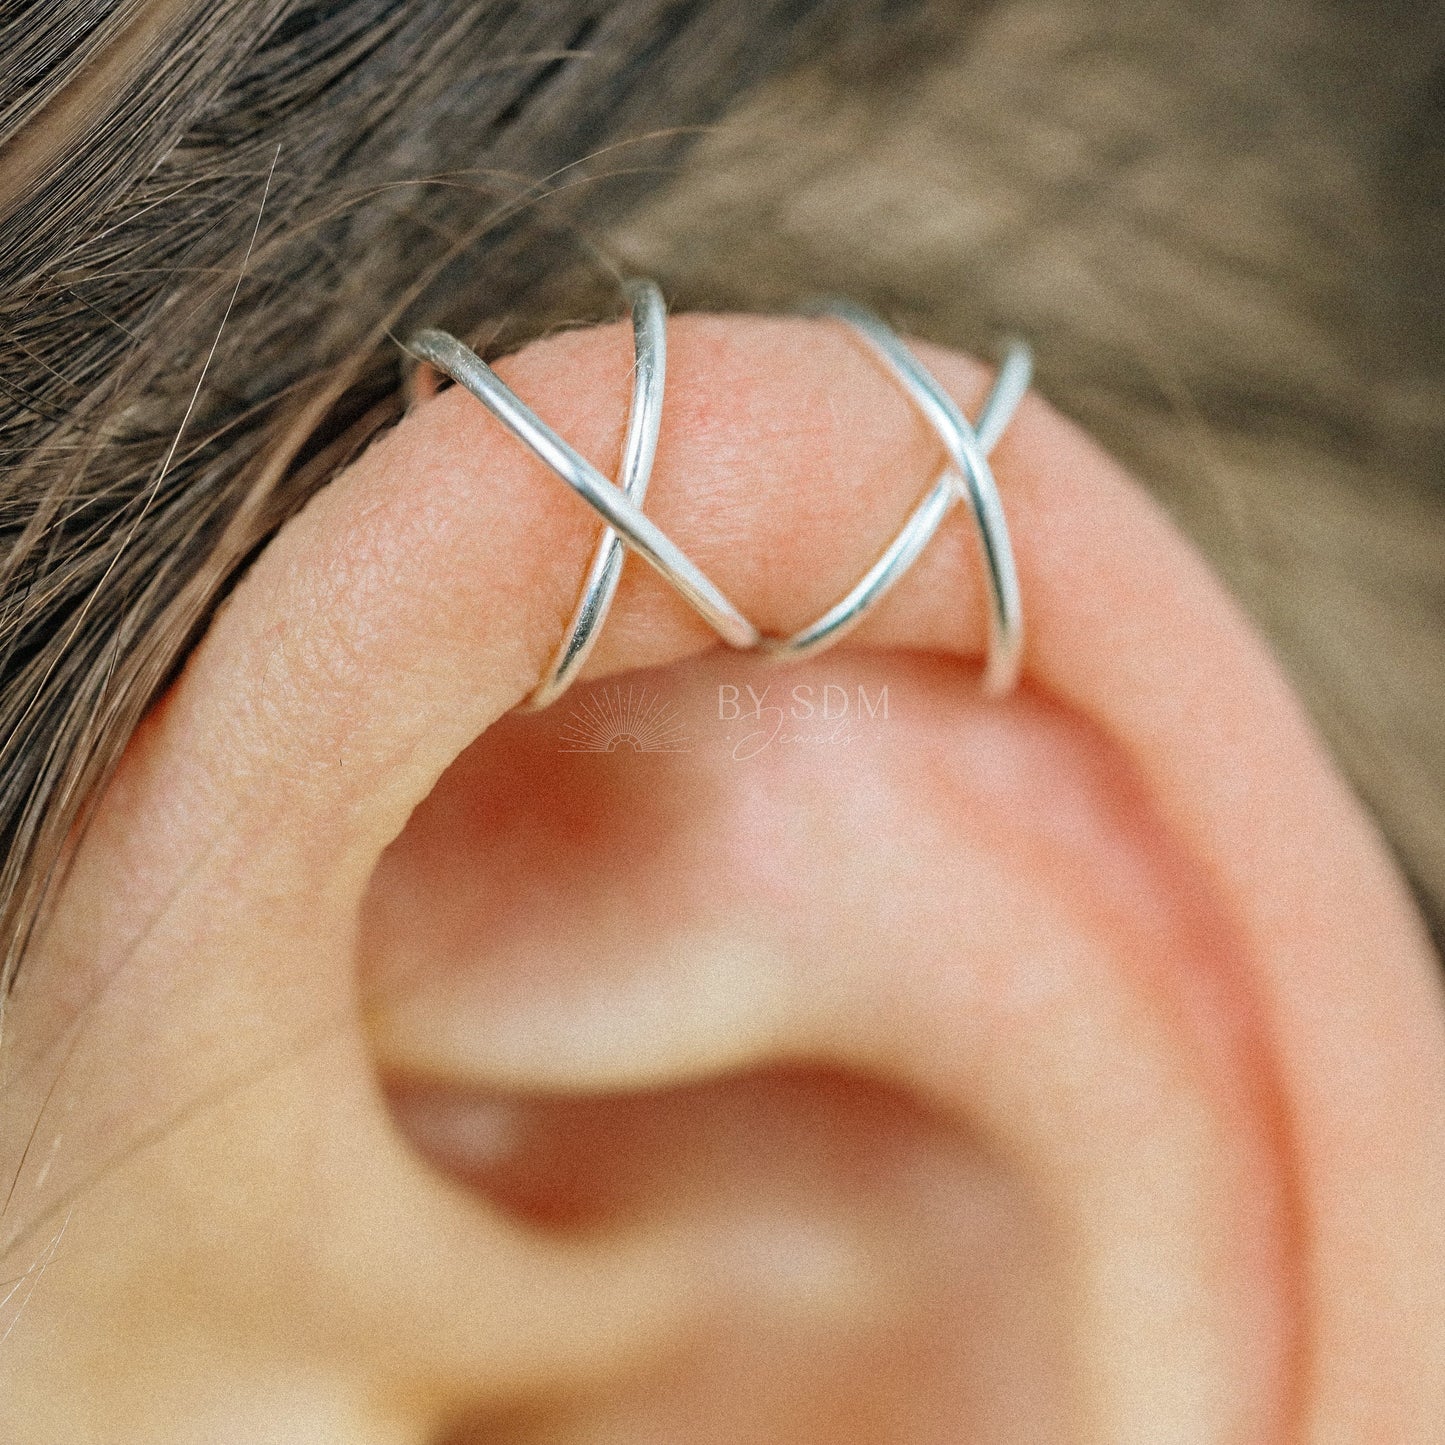 Set of 2 Ear Cuffs or Single Ear Cuff 20g Double & Criss Cross Ear Cuff No Piercing Cartilage Ear Cuff Silver Ear Cuff Gold Ear Cuff